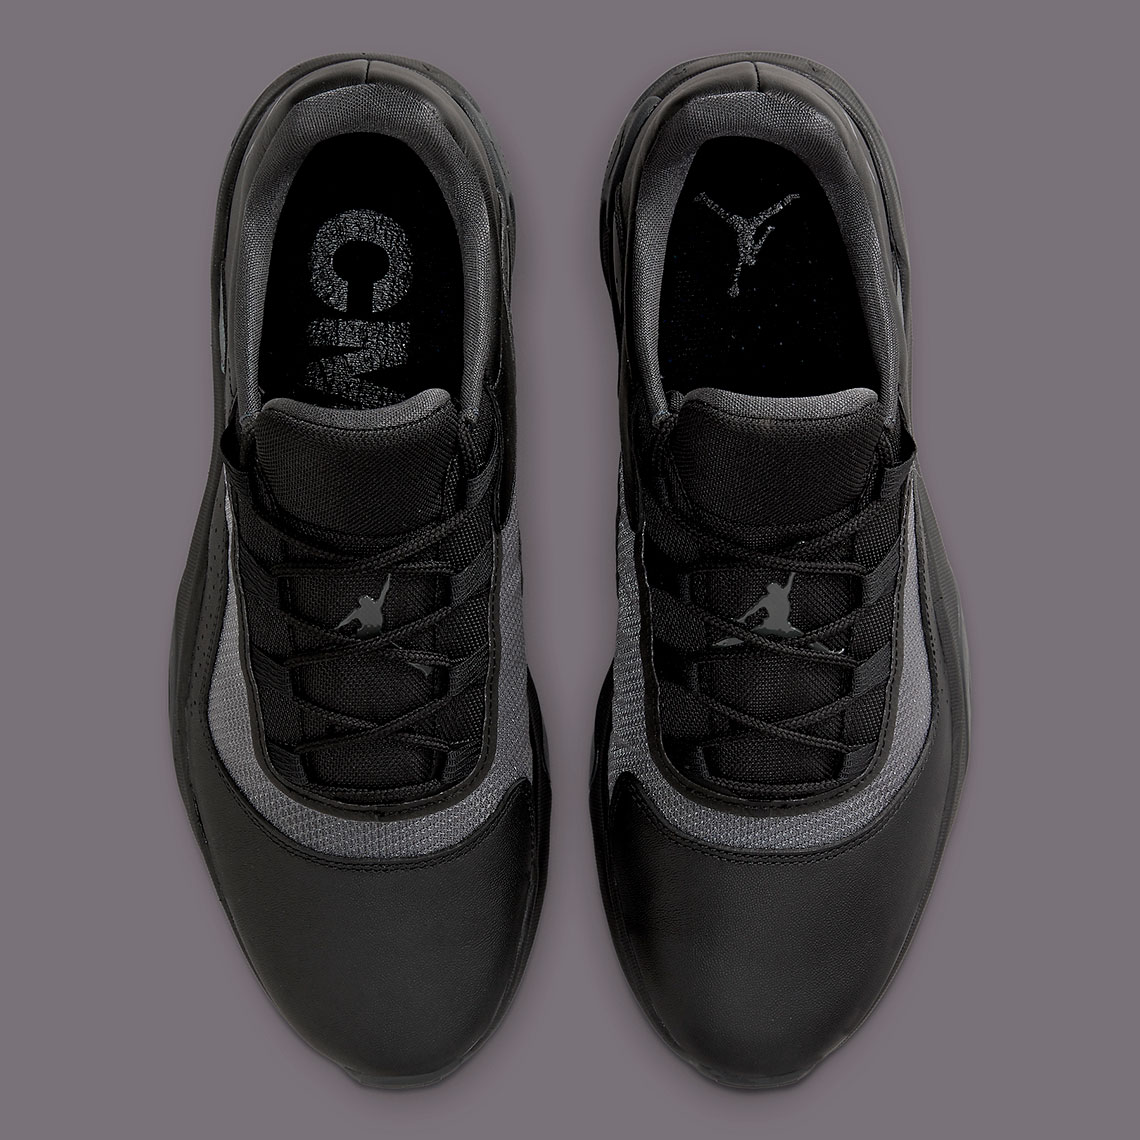 Air Jordan 11 CMFT Low Black CW0784-003 | SneakerNews.com